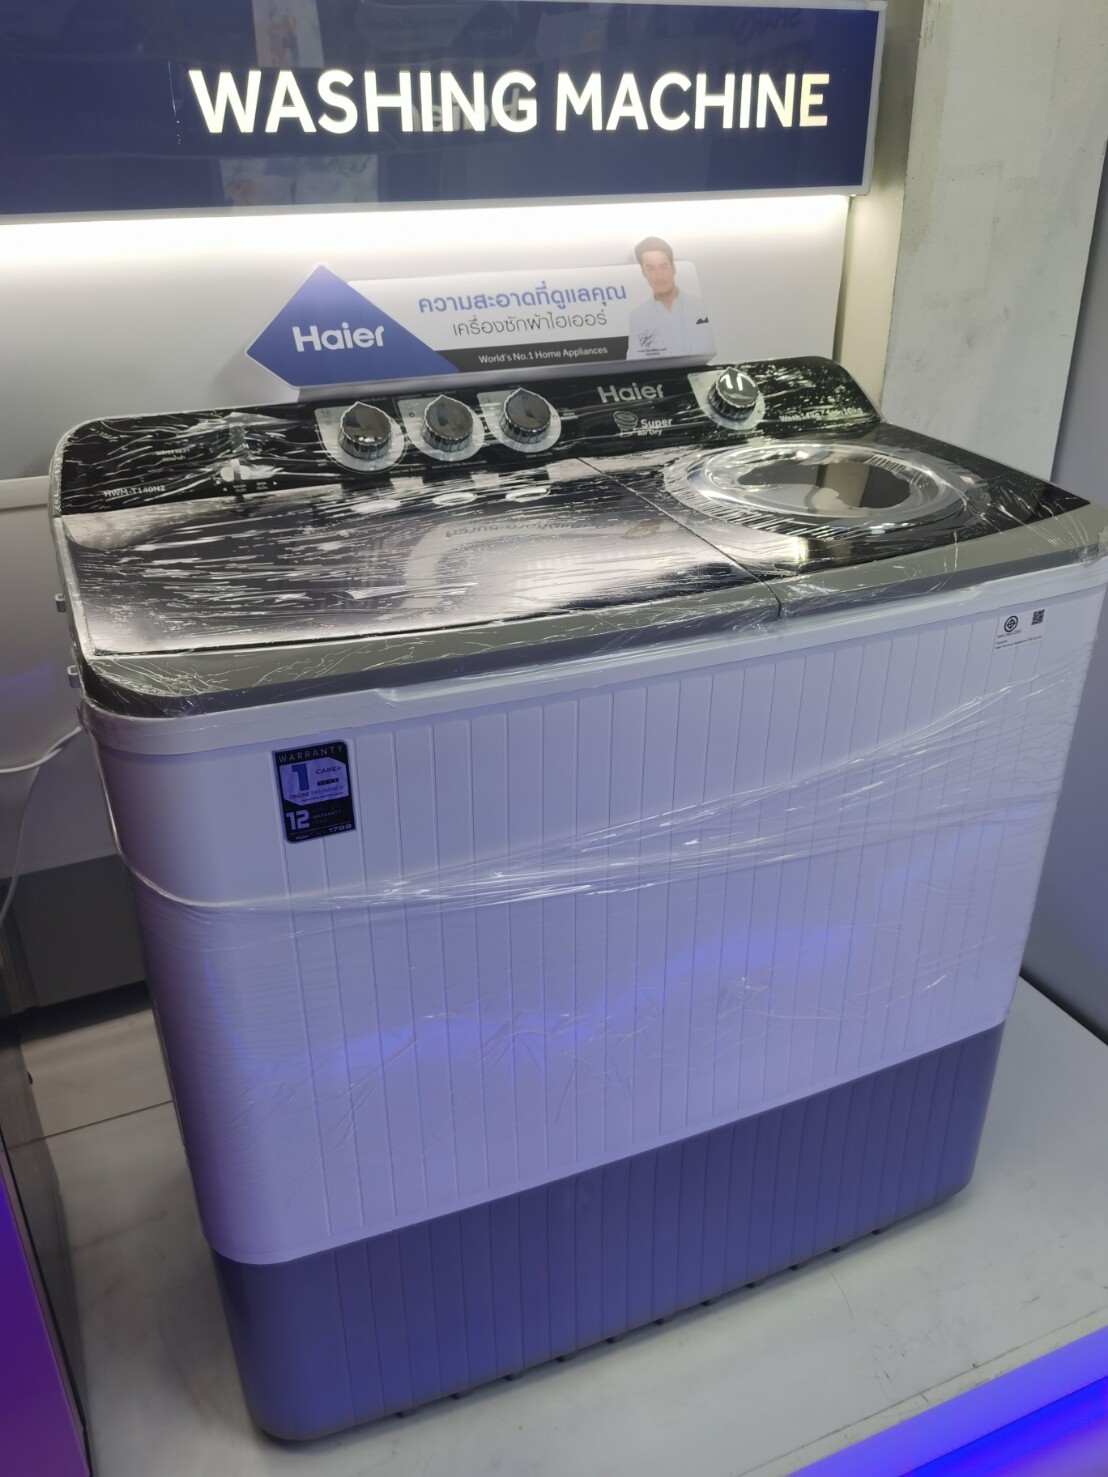 ใหญ่สะใจ Haier เครื่องซักผ้า 2 ถัง รุ่น HWM T140N2 ความจุ 14.0 Kg รับประกันมอเตอร์ 12ปี ระบบSuper Dryปั่นหมาดอัจฉริยะแถม ขาเสริมความสูง 1ชุด